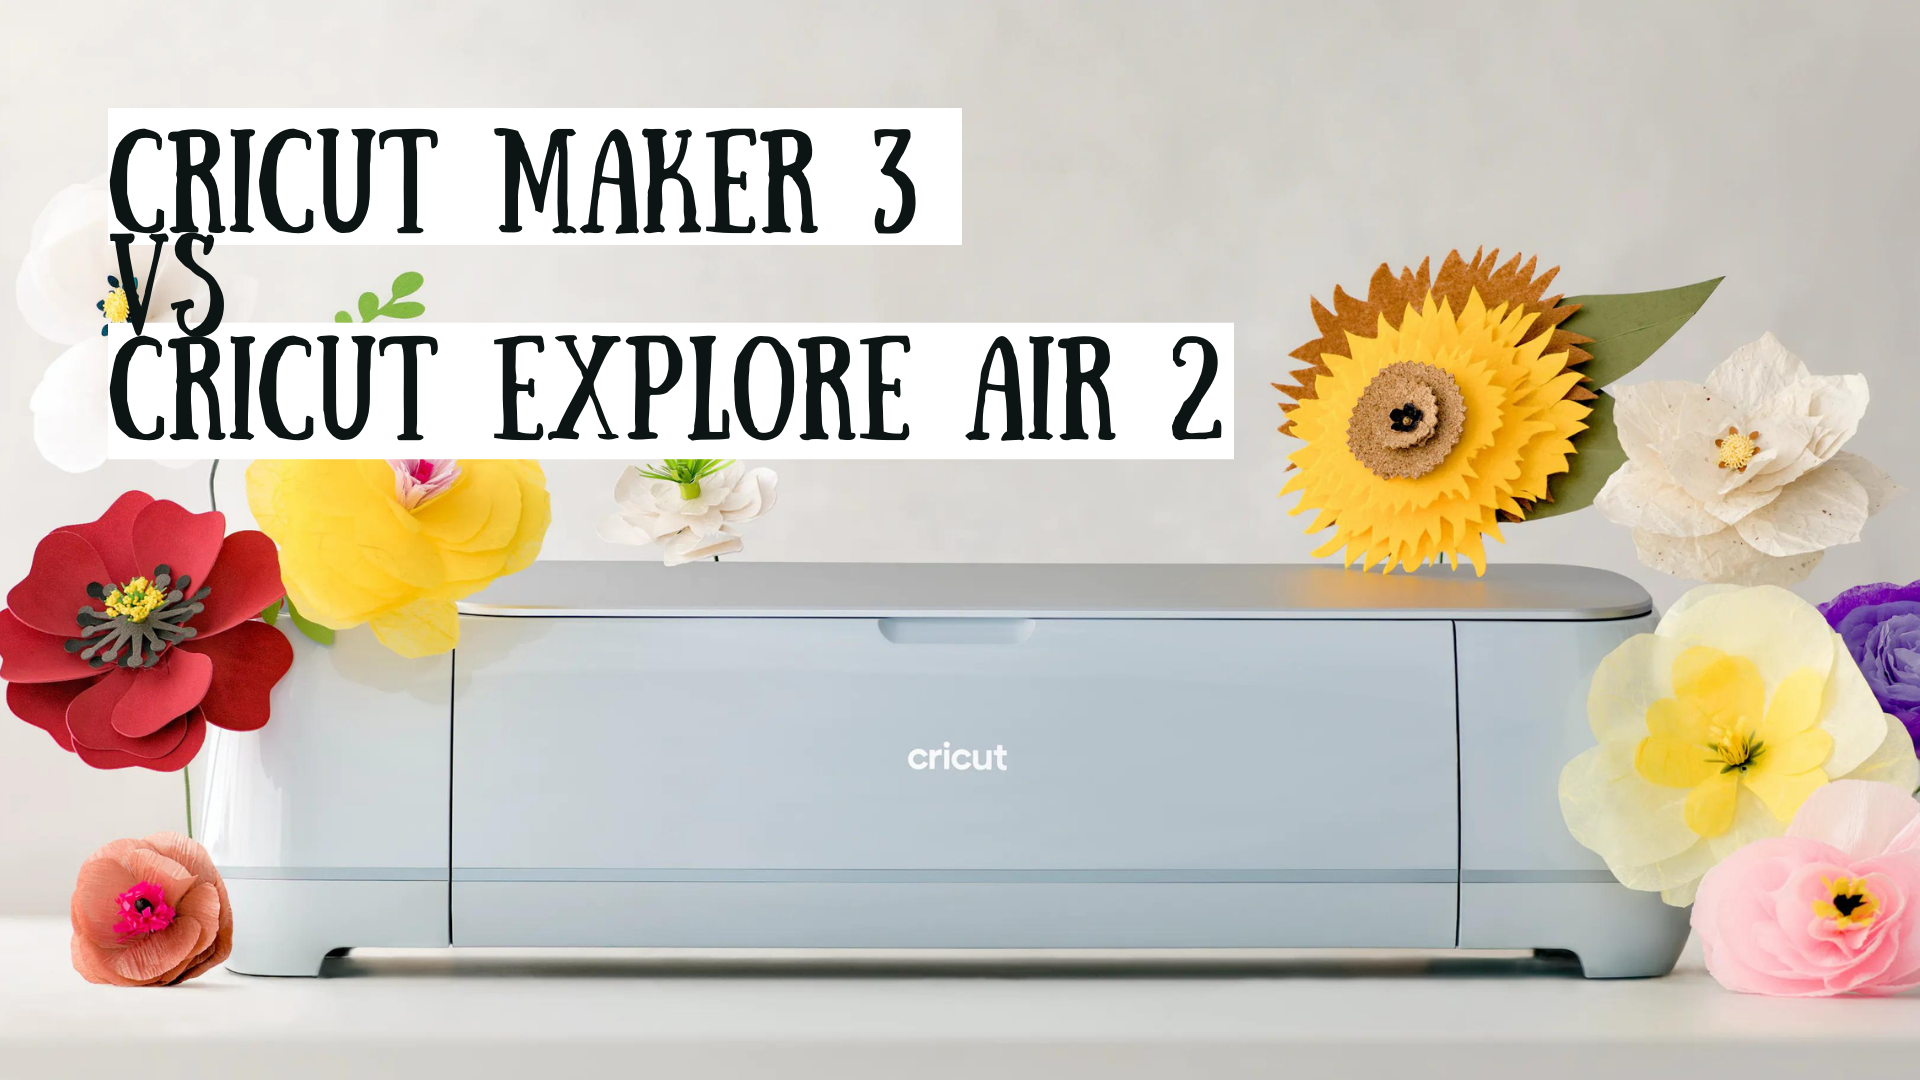 Cricut Maker vs. Explore Air 2